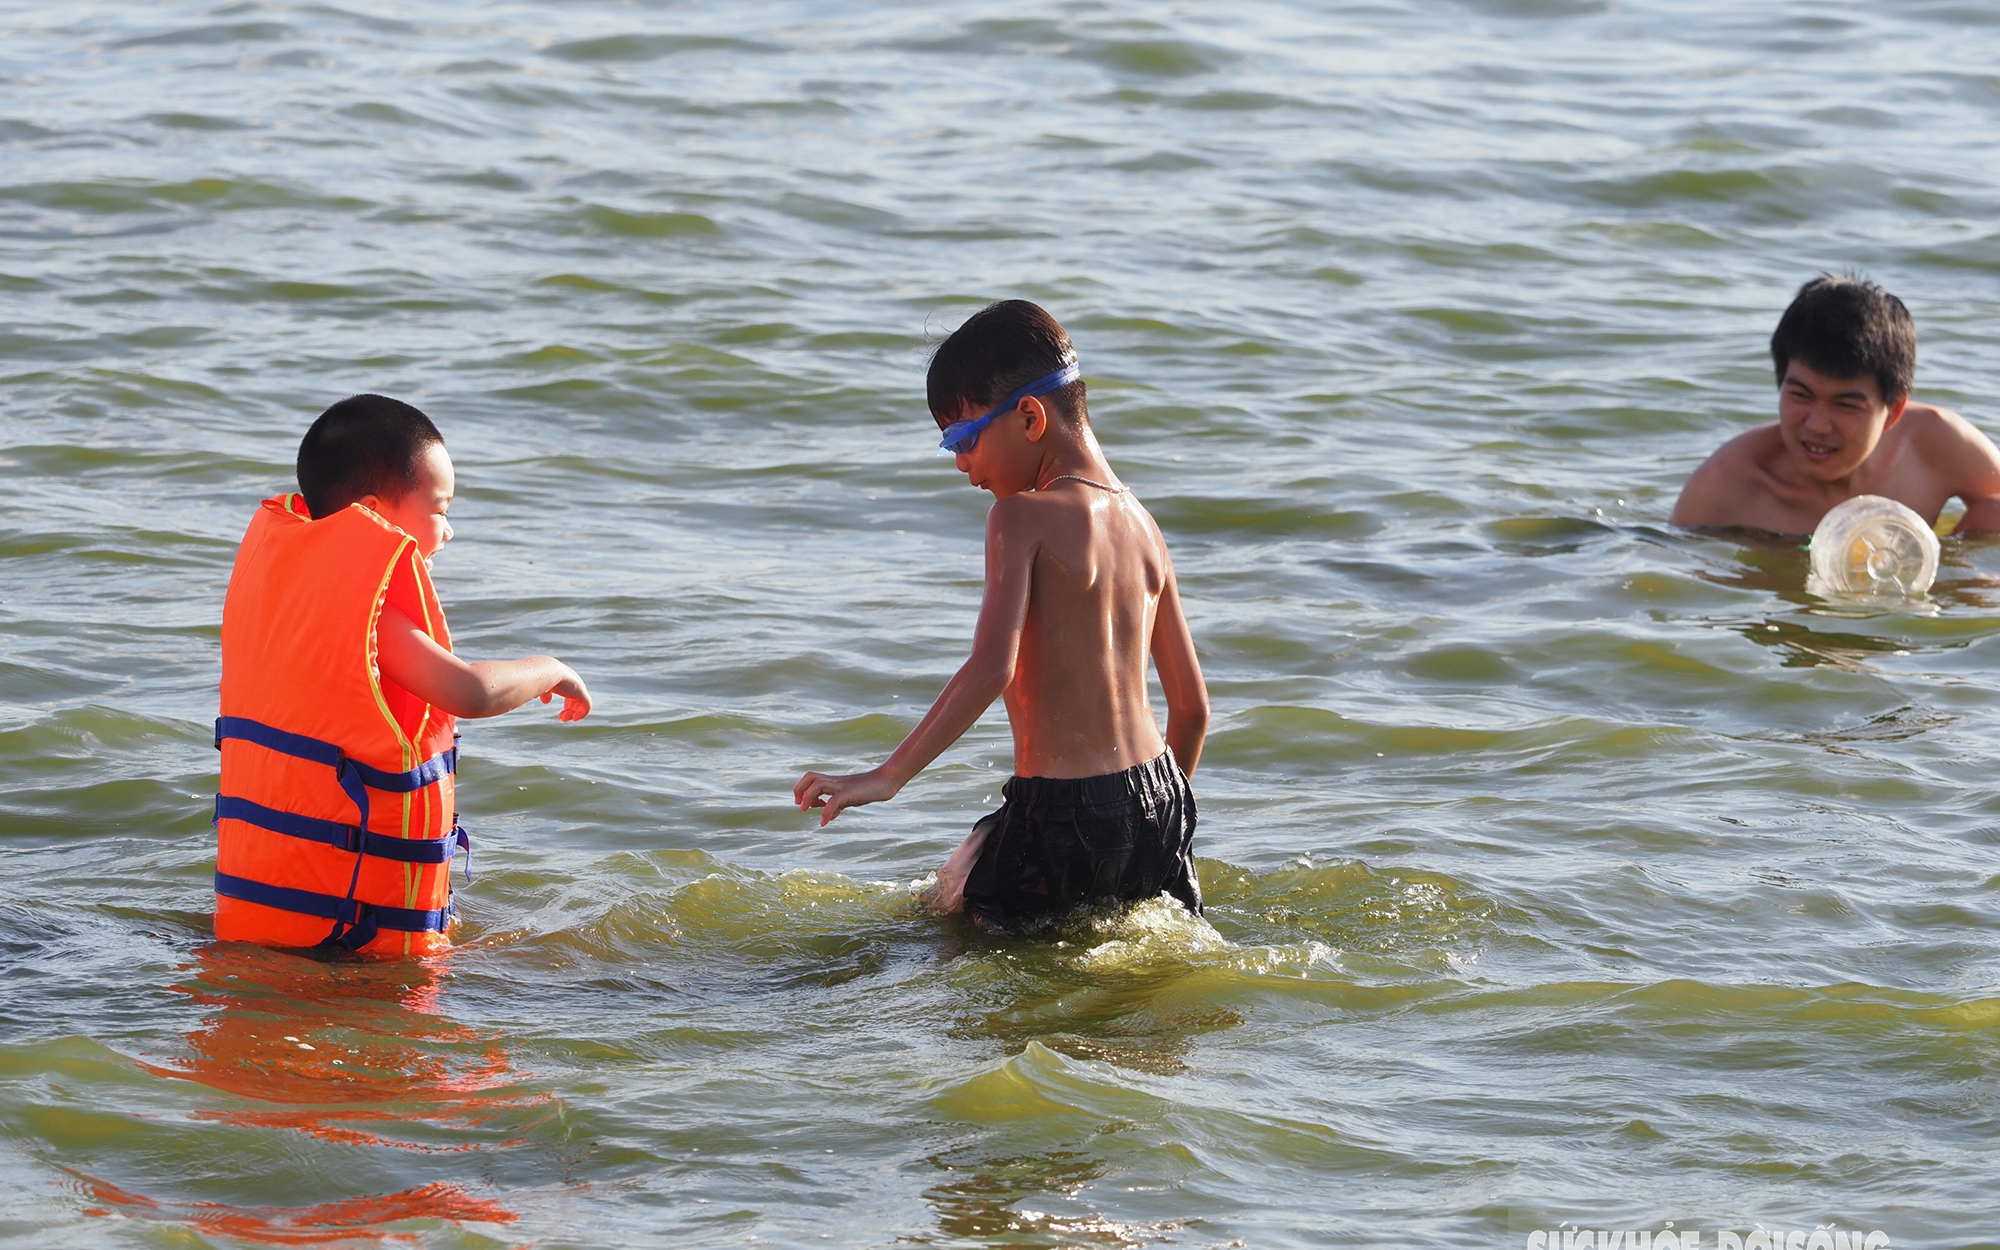 Nắng nóng 40 độ C, người Hà Nội dắt thú cưng xuống Hồ Tây giải nhiệt